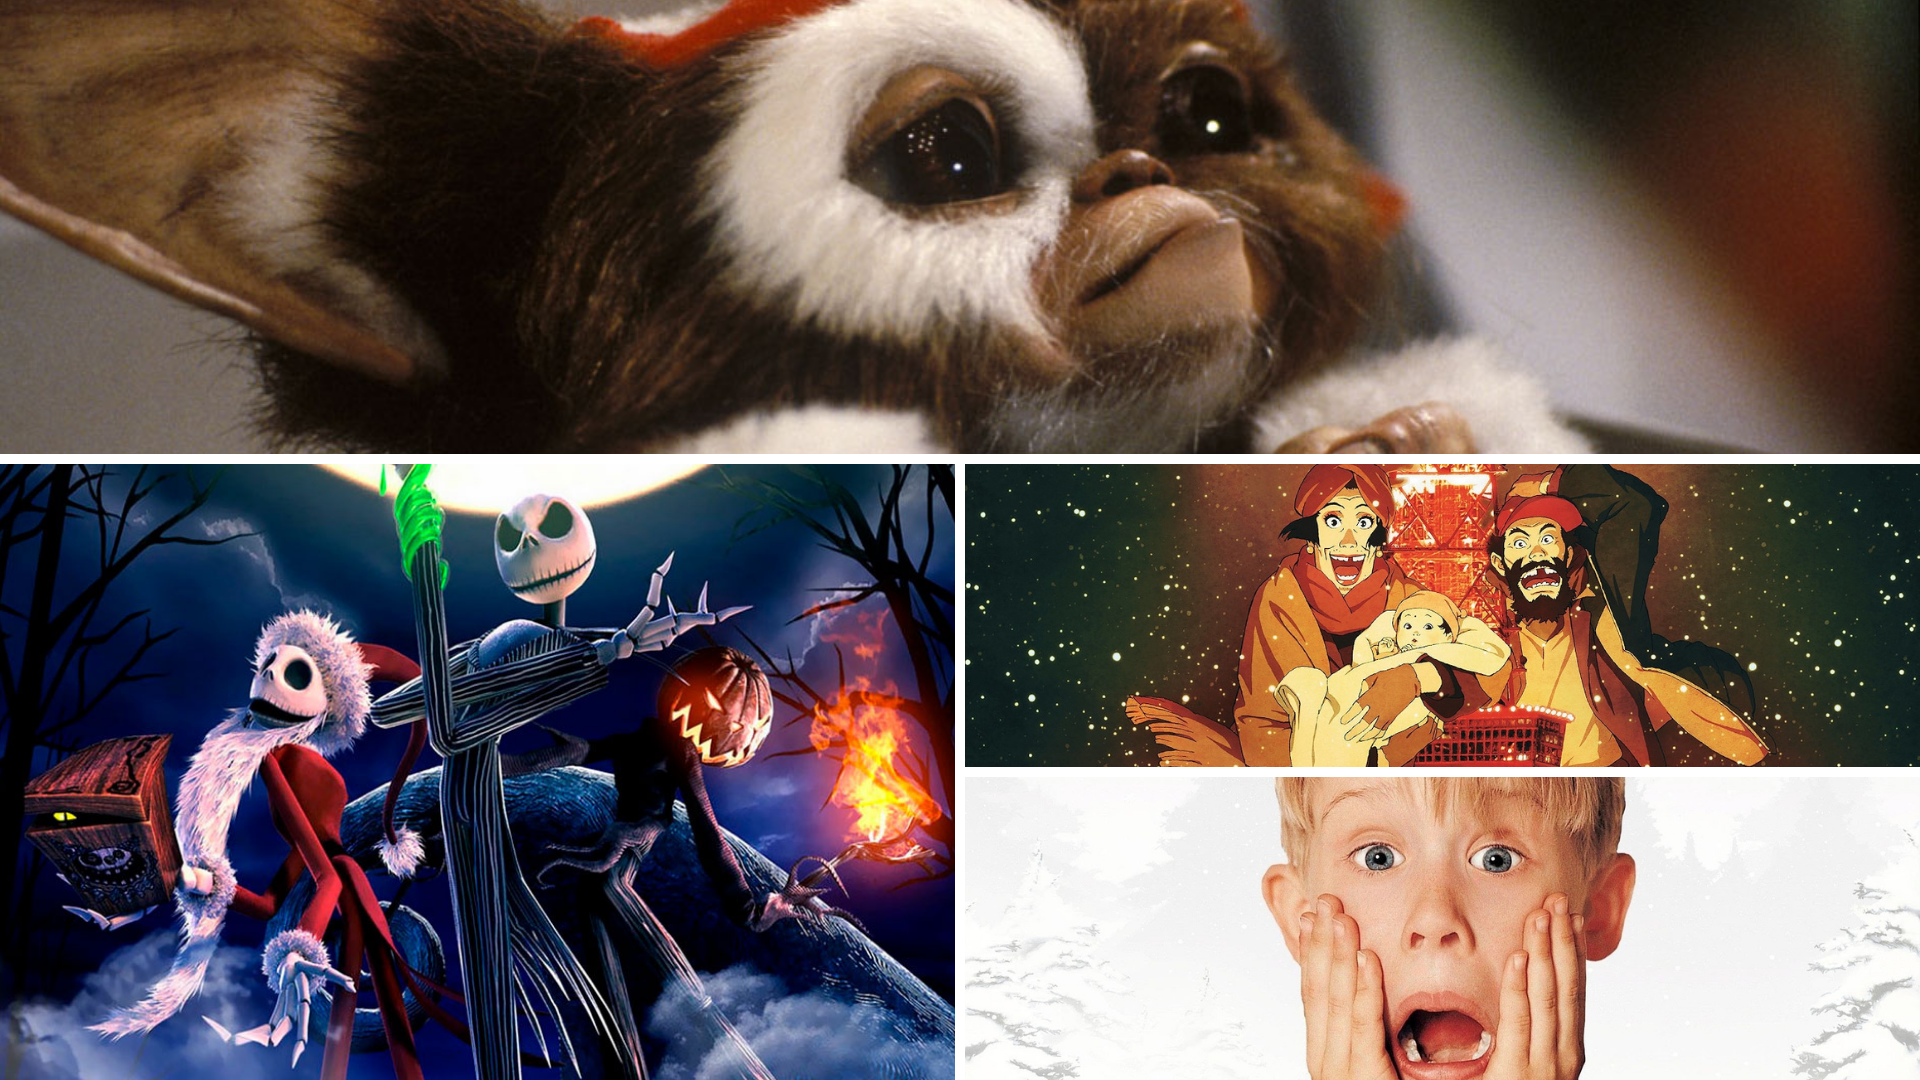 Os 5 melhores personagens de filmes de Natal - Canaltech